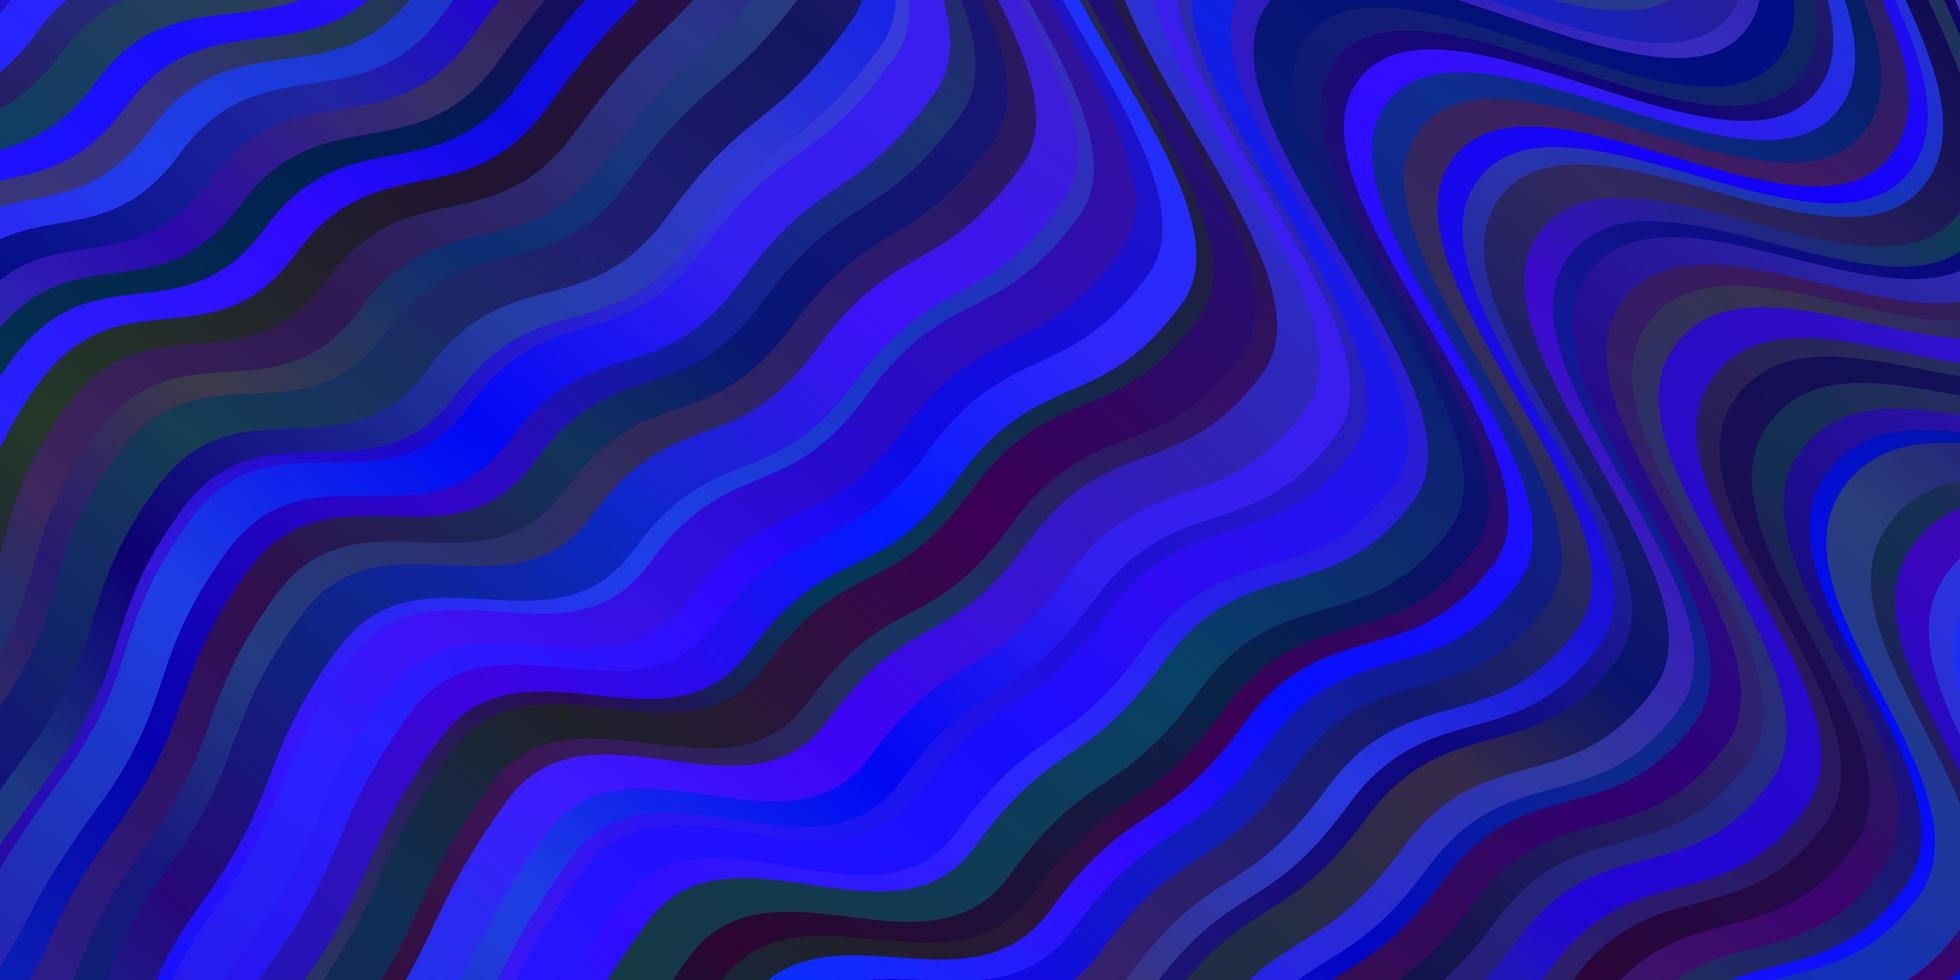 mörkblå vektorstruktur med sneda linjer. vektor